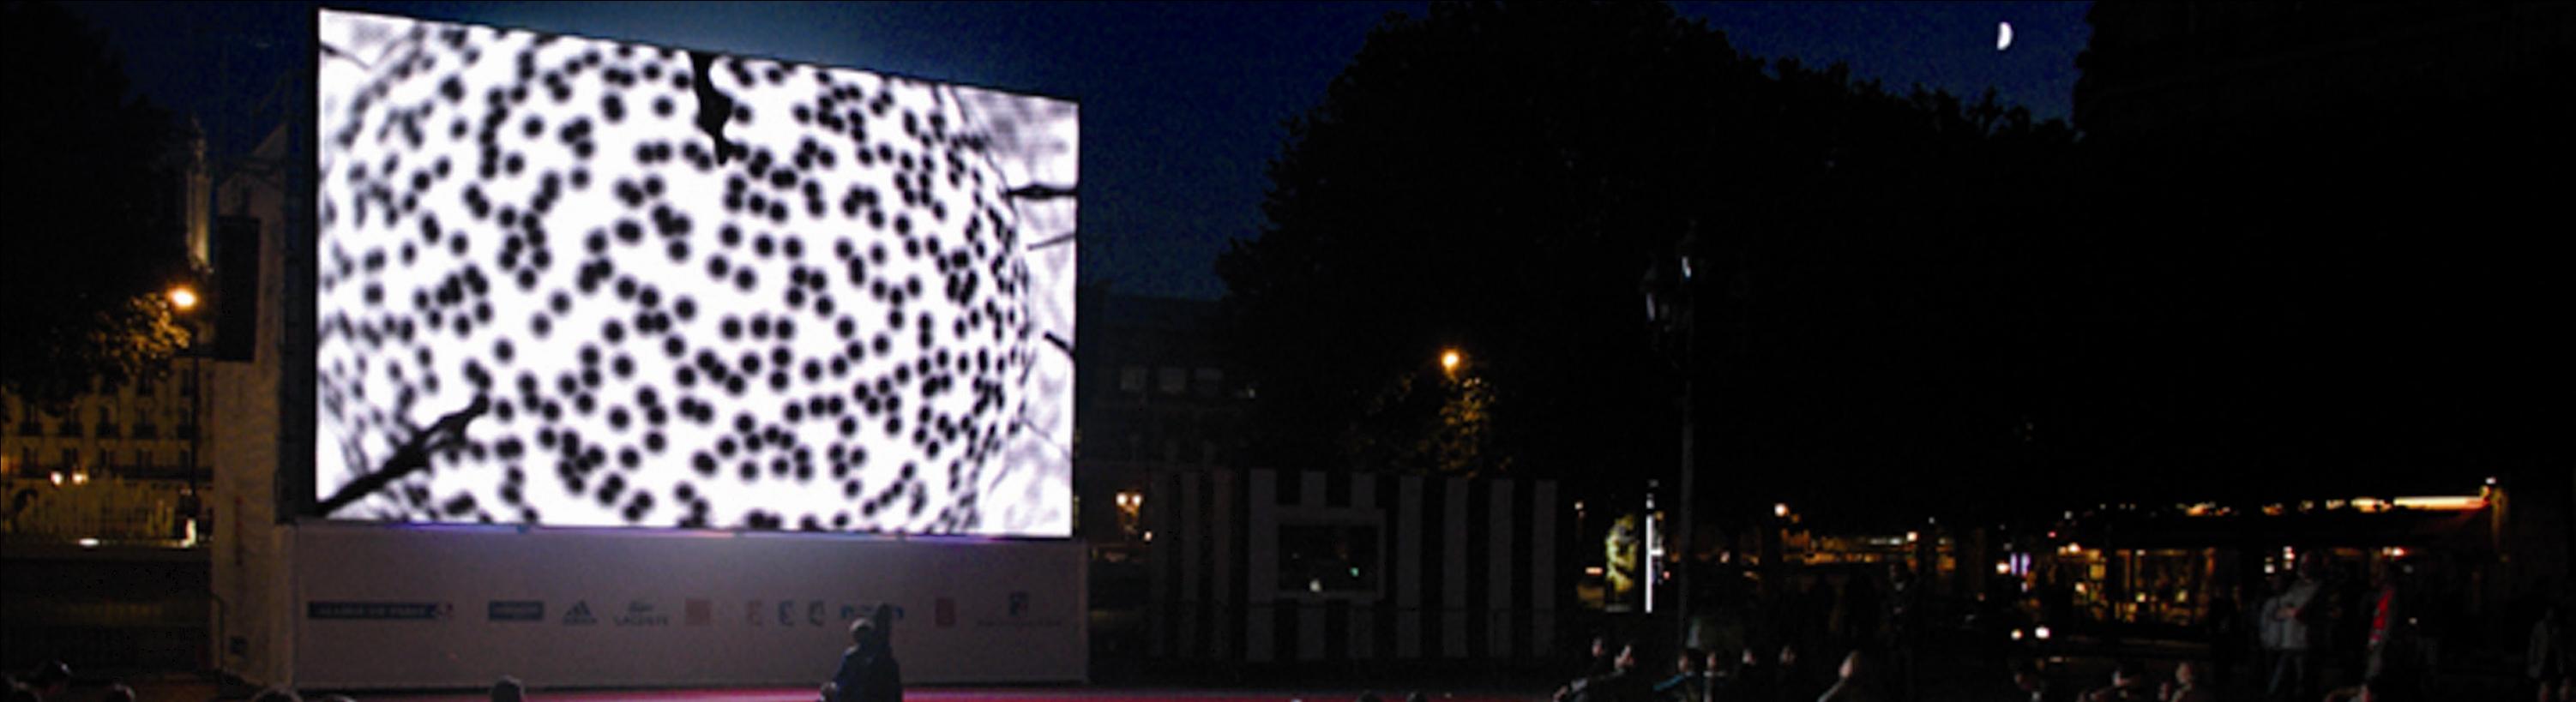 Nuit du film scientifique sur écran géant , le 5 juin, sur le parvis de l'Hôtel de Ville de Paris